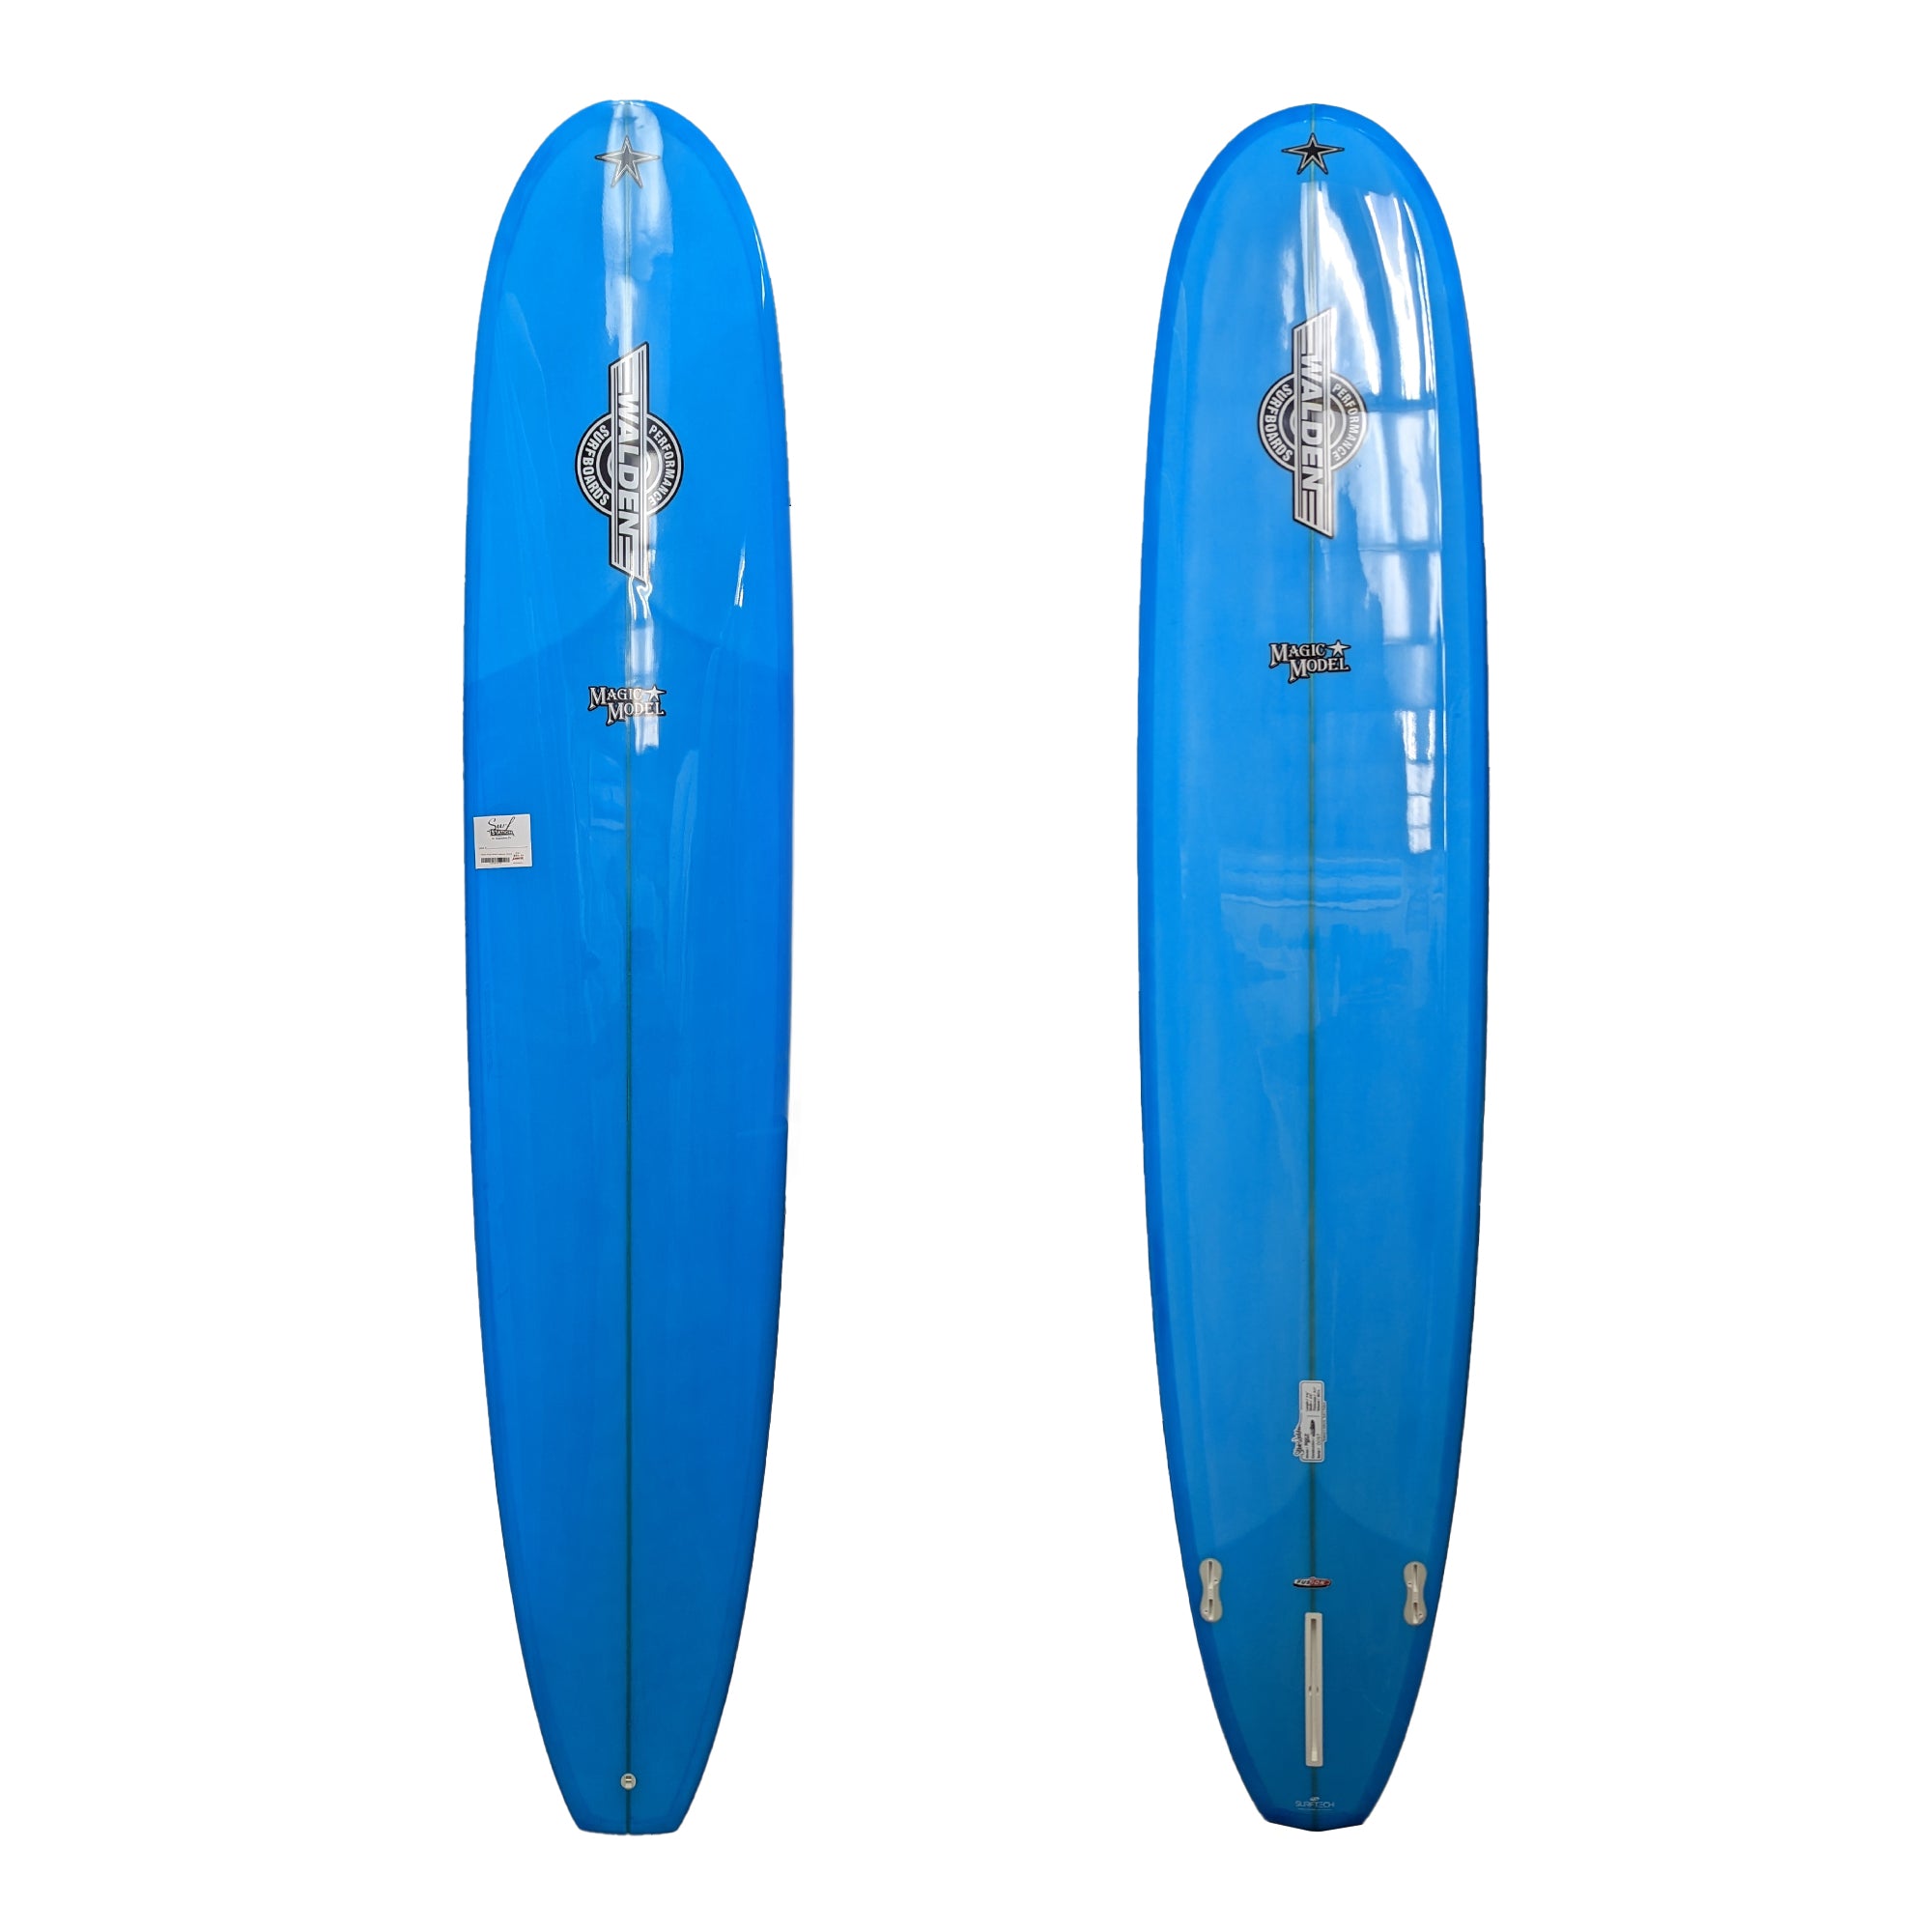 Walden Magic Model 9'6 Longboard Surfboard - FCS II